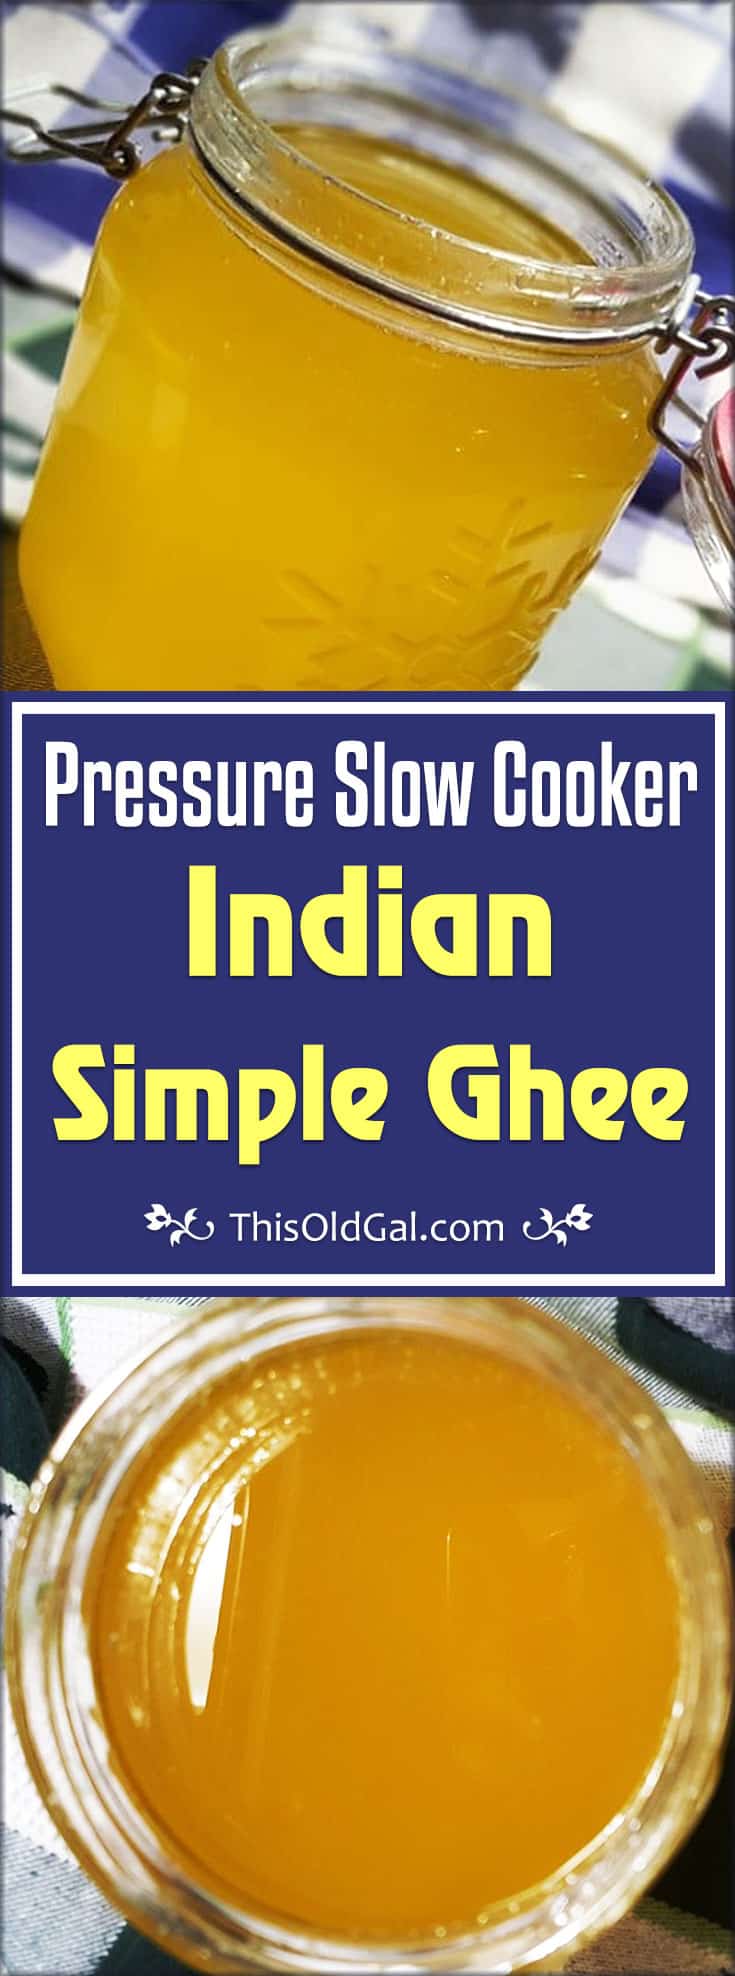 Indian Pressure Slow Cooker Simple Ghee